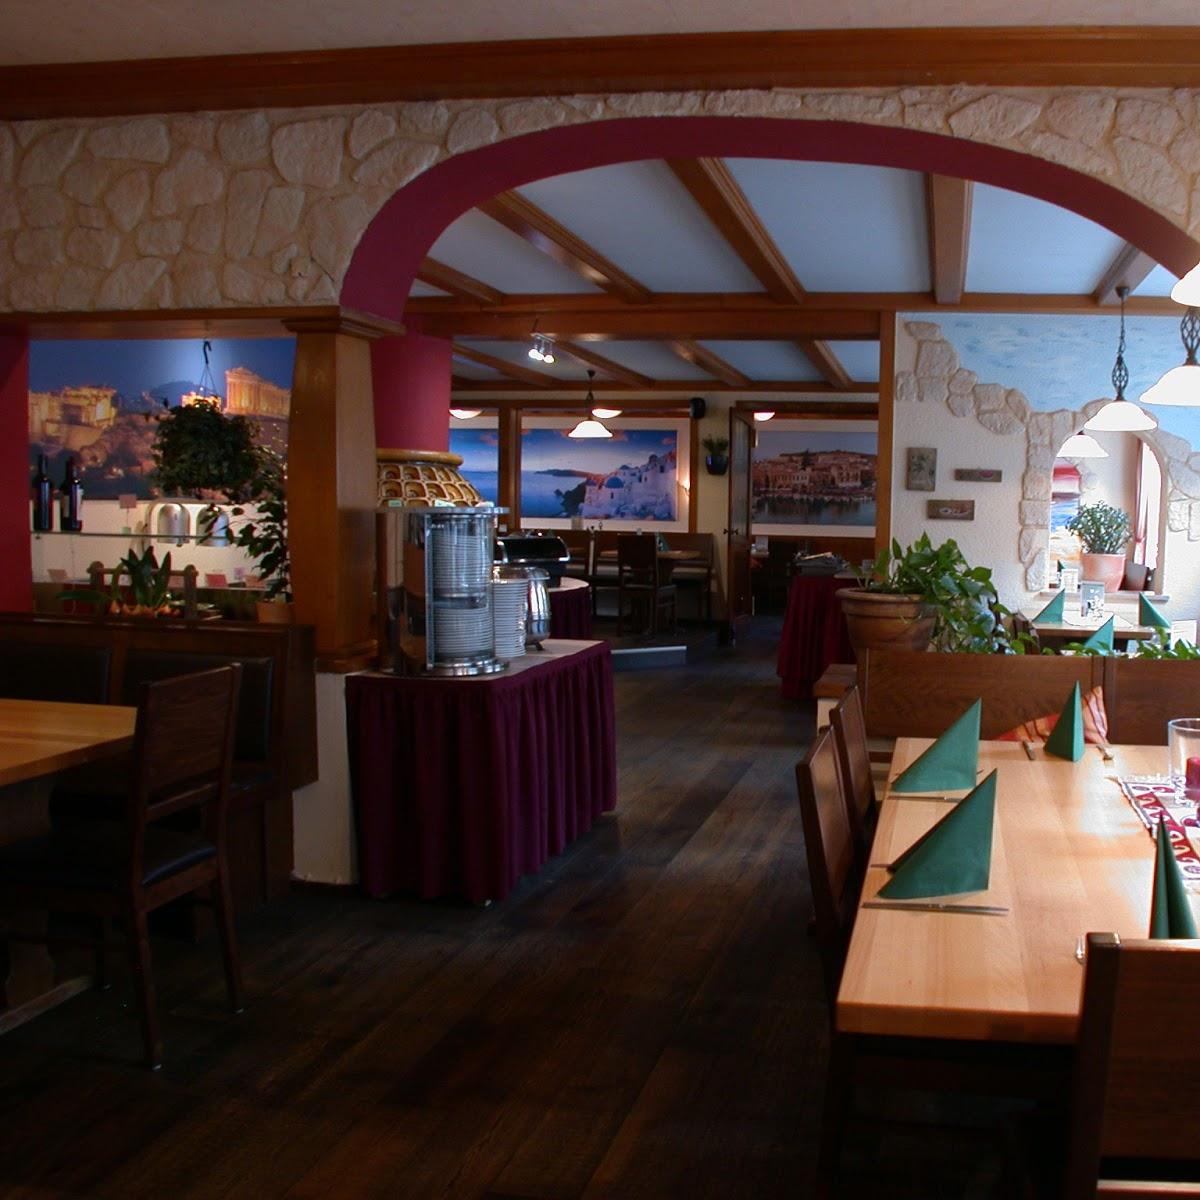 Restaurant "Arkadia" in Memmingen